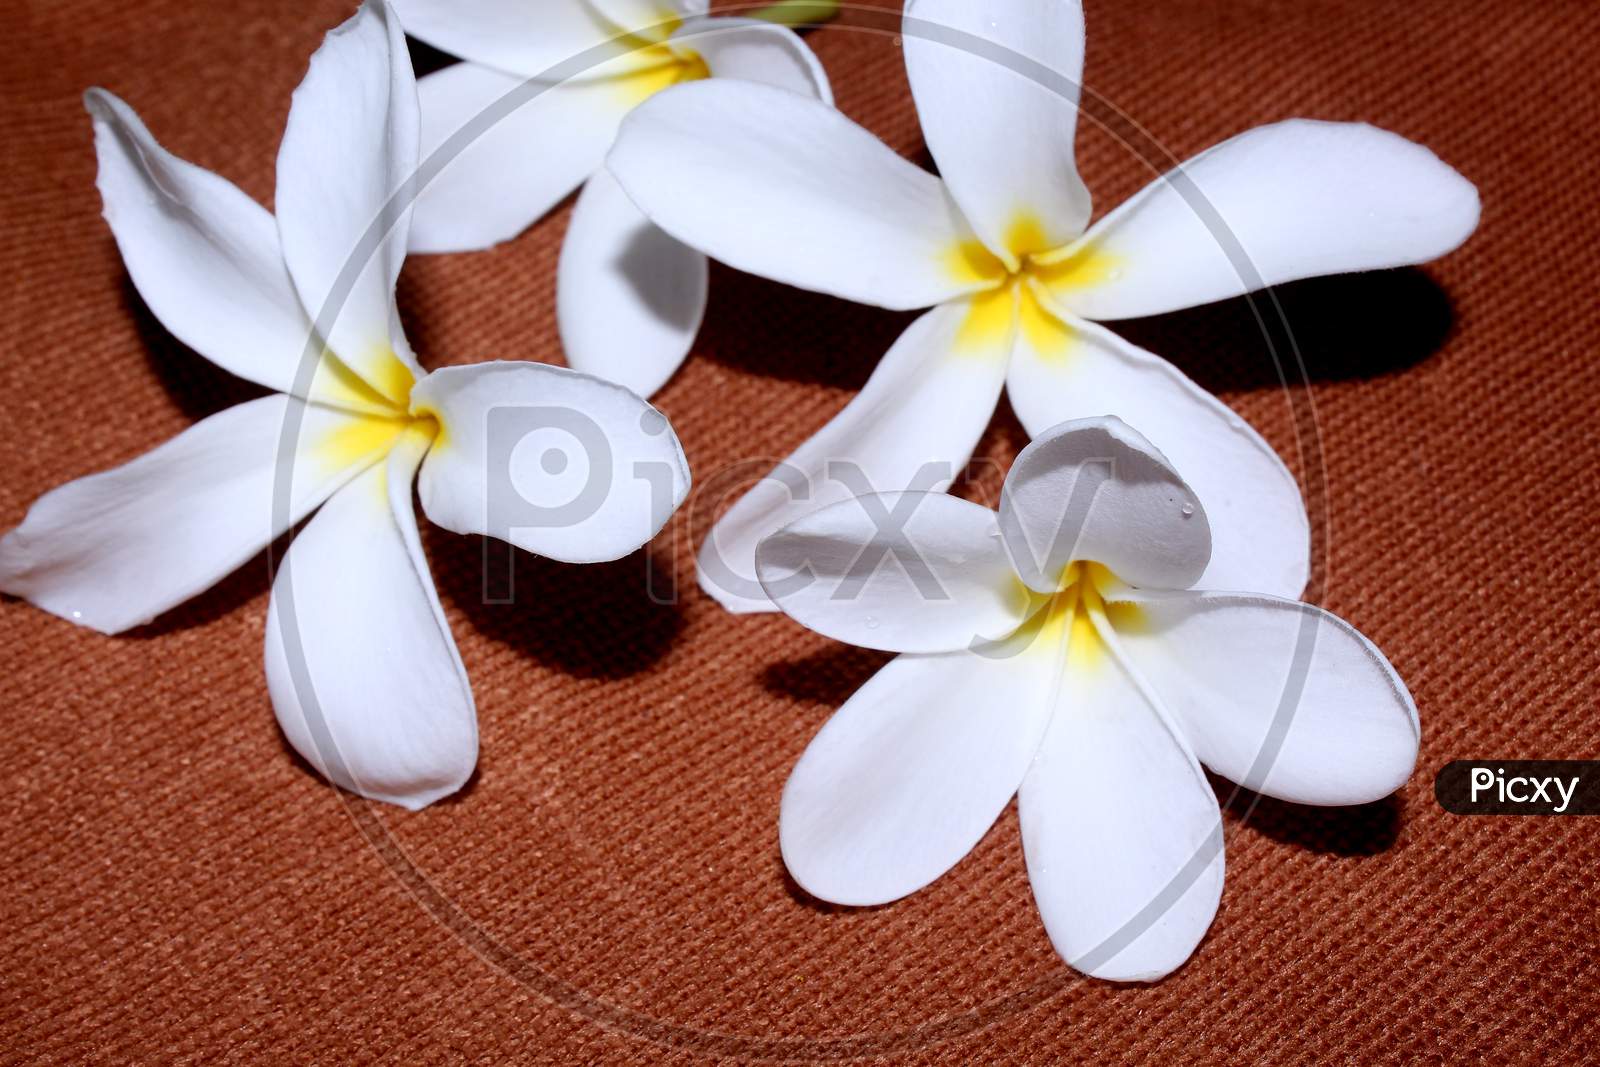 Crape jasmine Flower  For Worshiping Hindu Gods